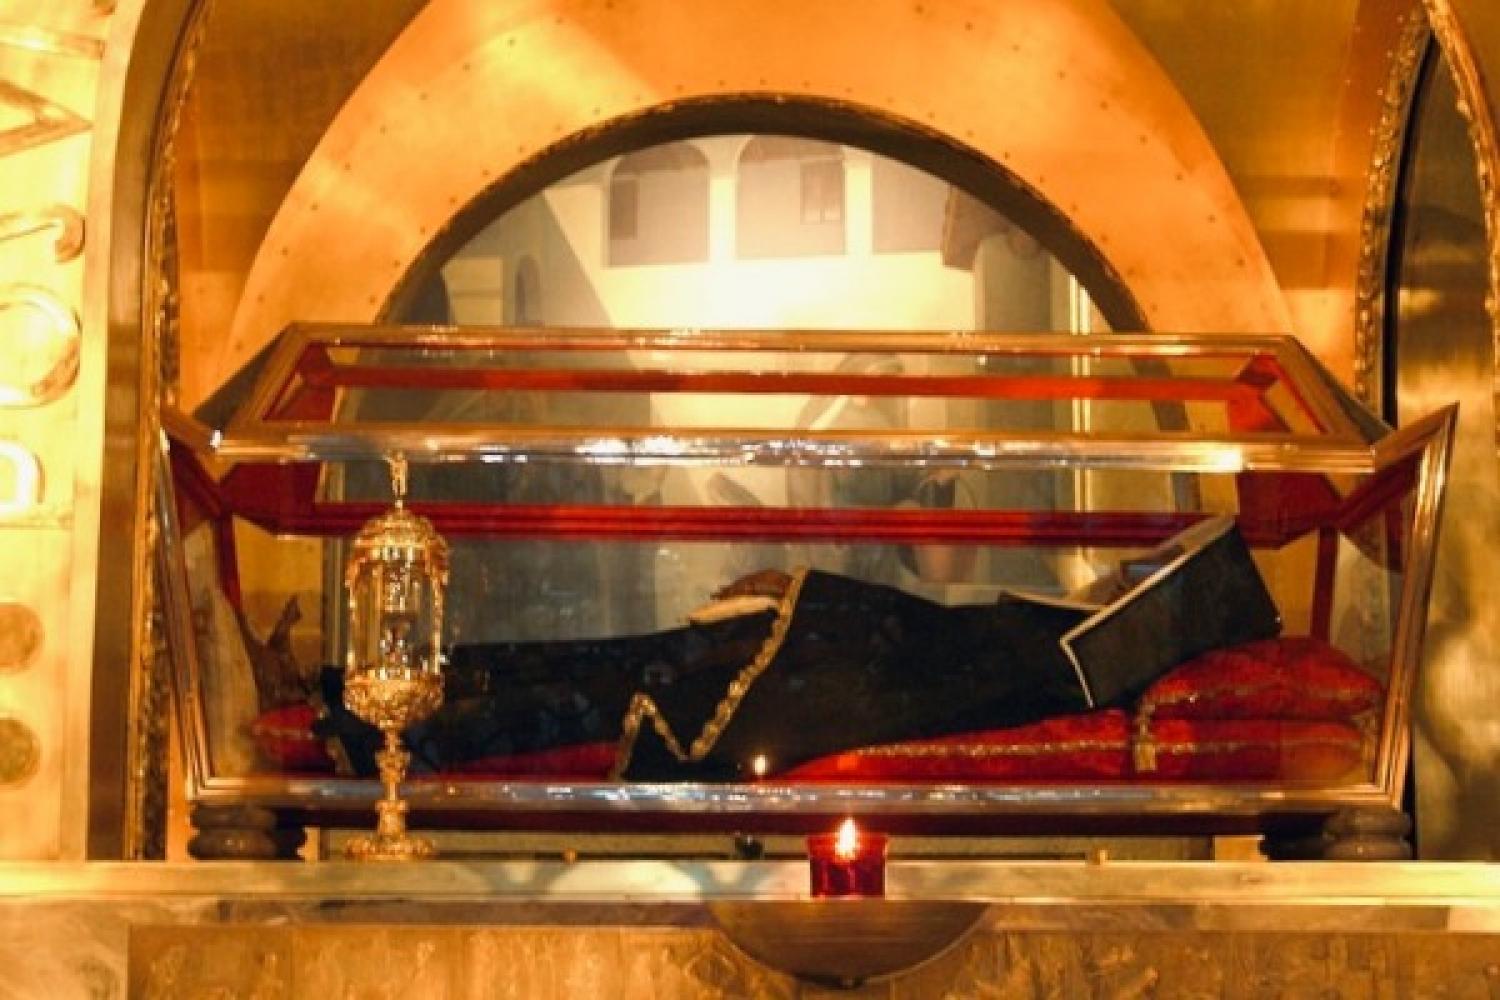 The incorruptible body of St. Rita of Cascia